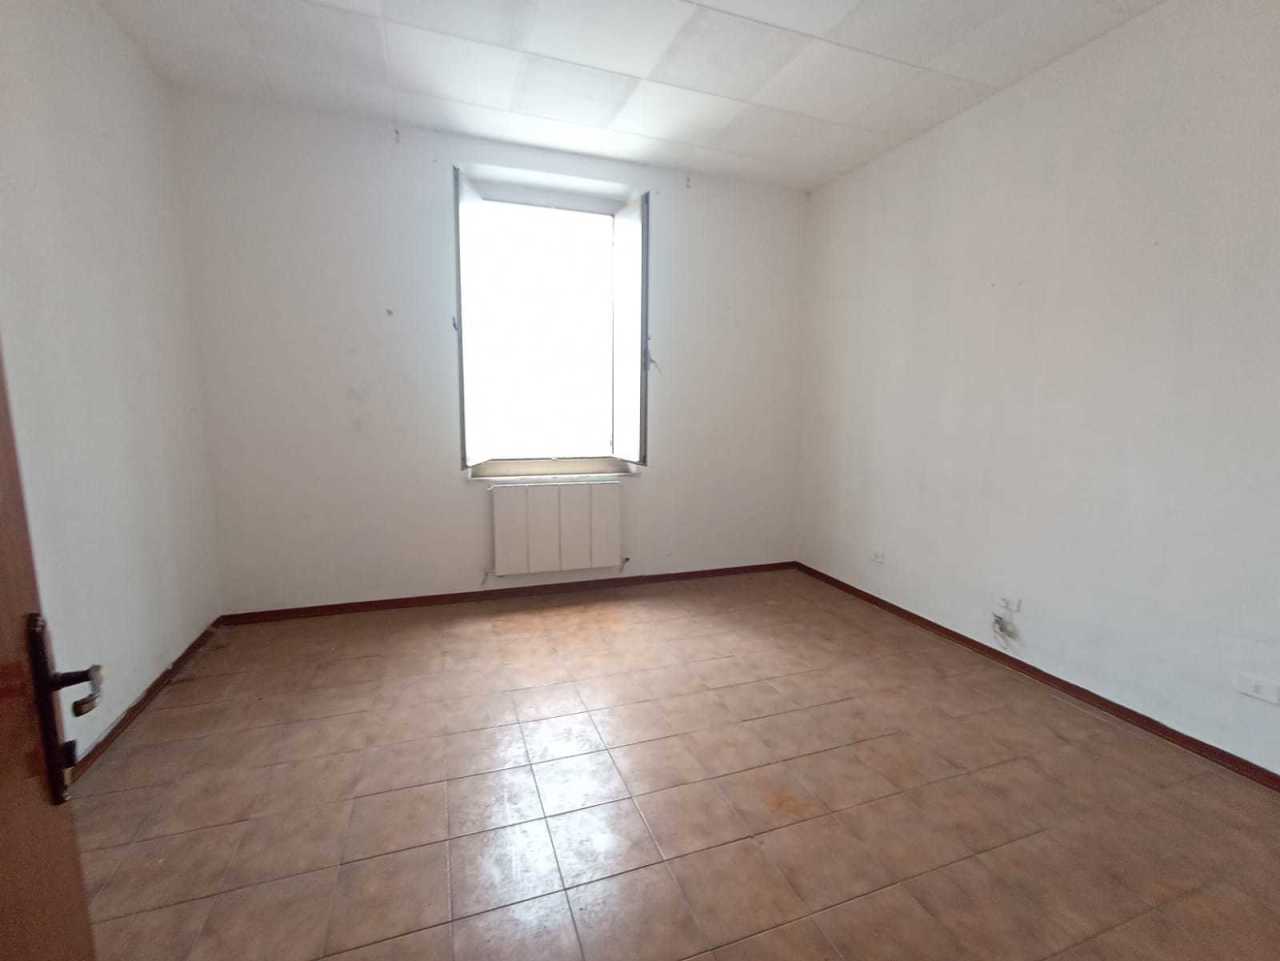 Appartamento in vendita a Chiaravalle, 9999 locali, prezzo € 50.000 | CambioCasa.it